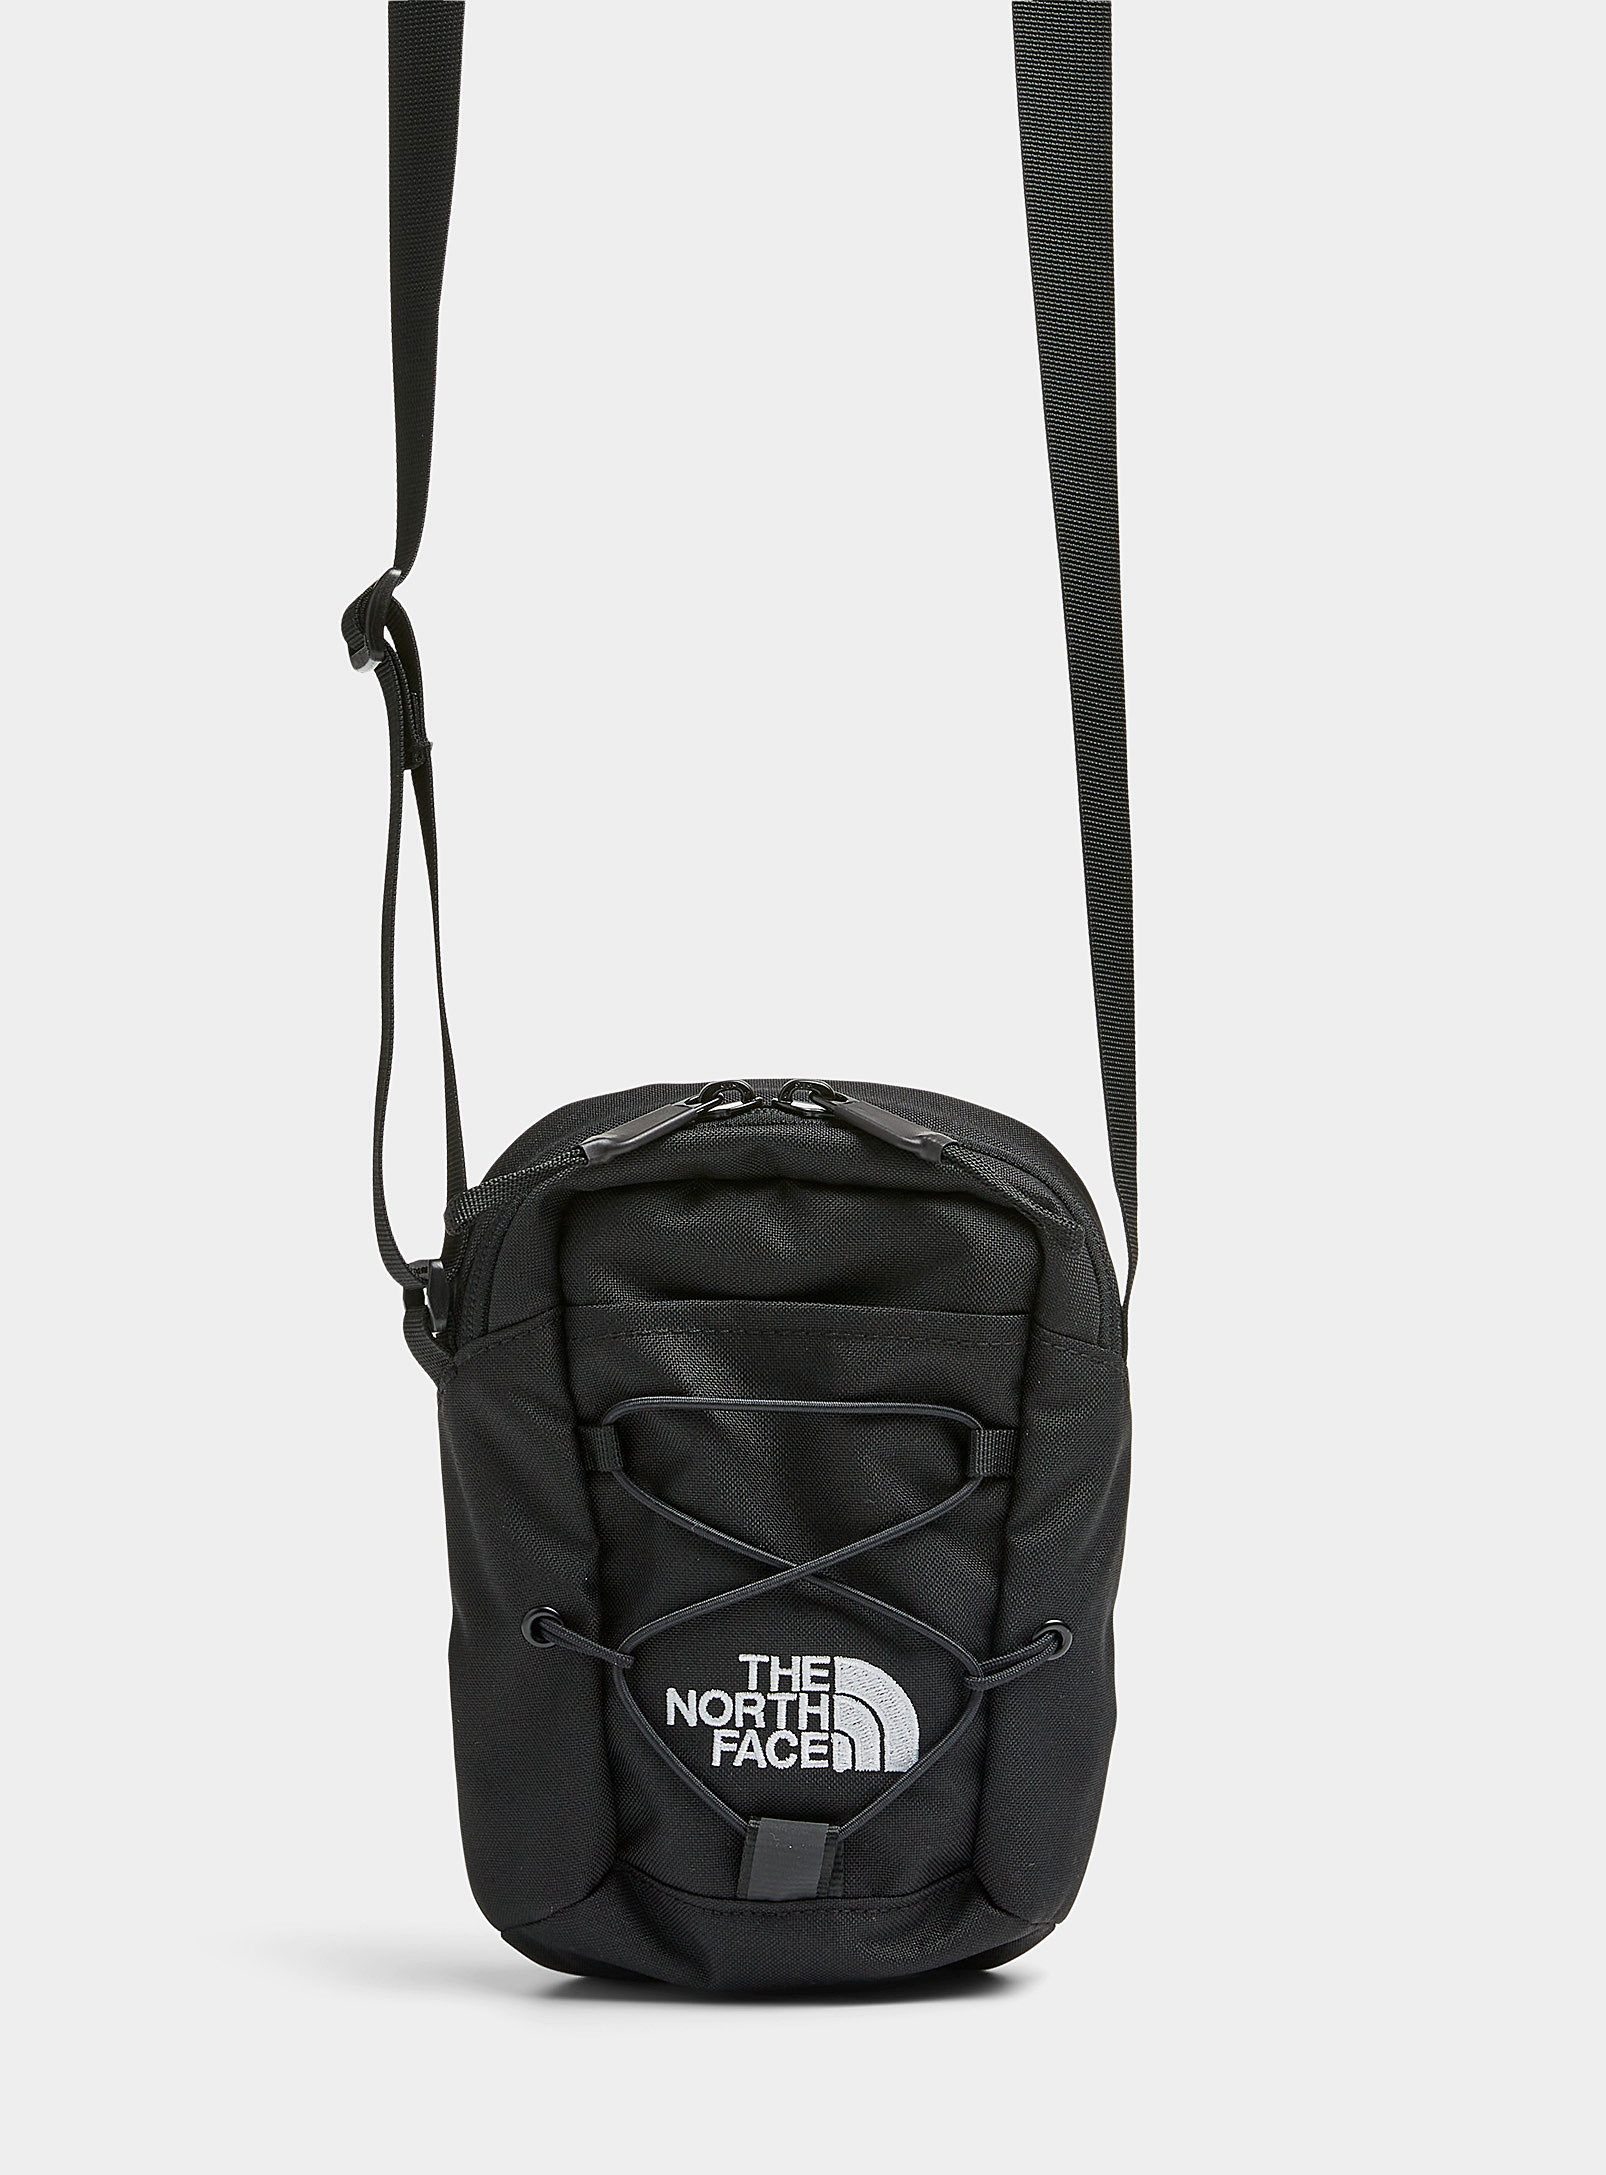 The North Face Jester Shoulder Bag In Black